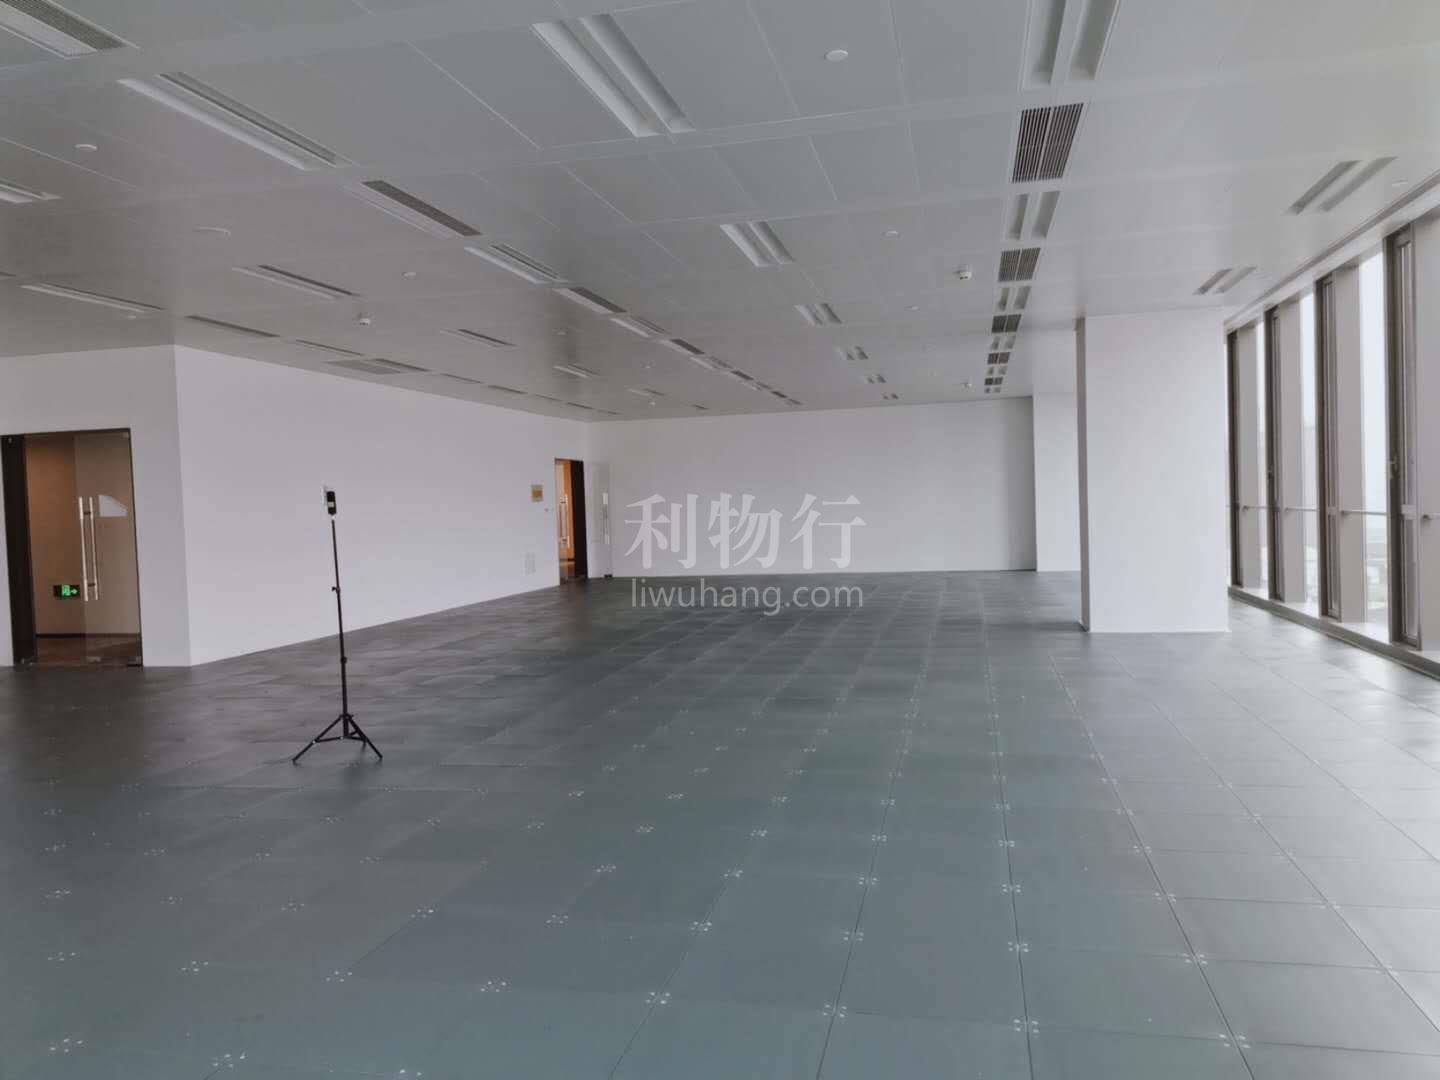 上海环贸广场写字楼1140m2办公室9.50元/m2/天 中等装修